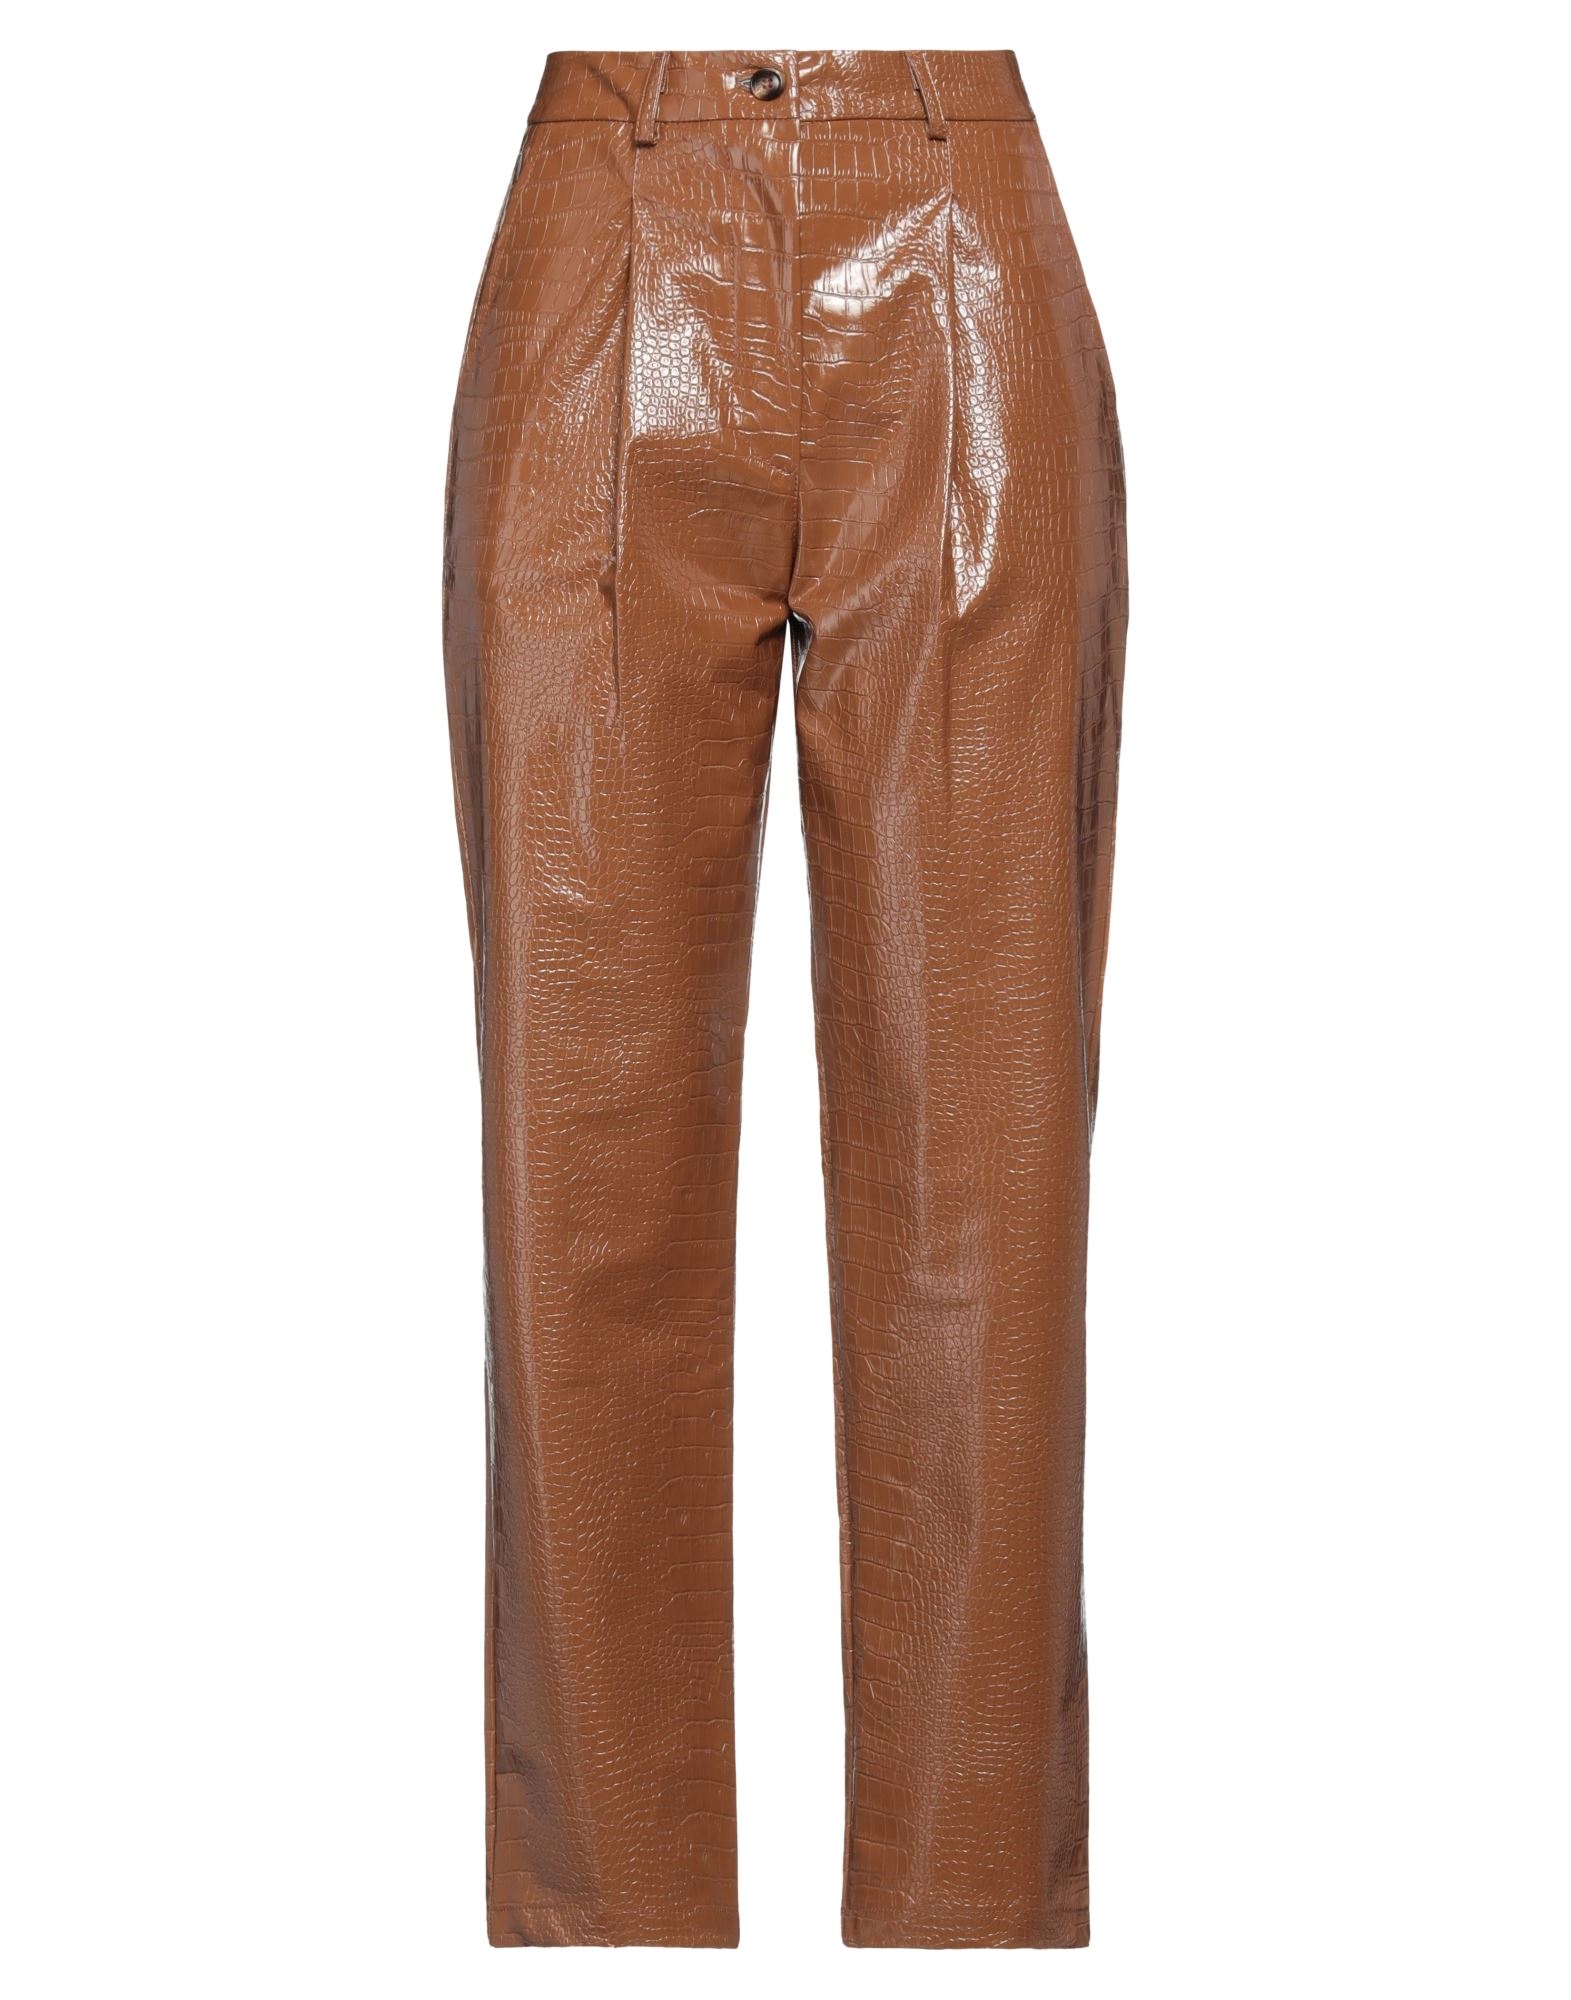 Wu'side Woman Pants Brown Size M/l Polyester, Cotton